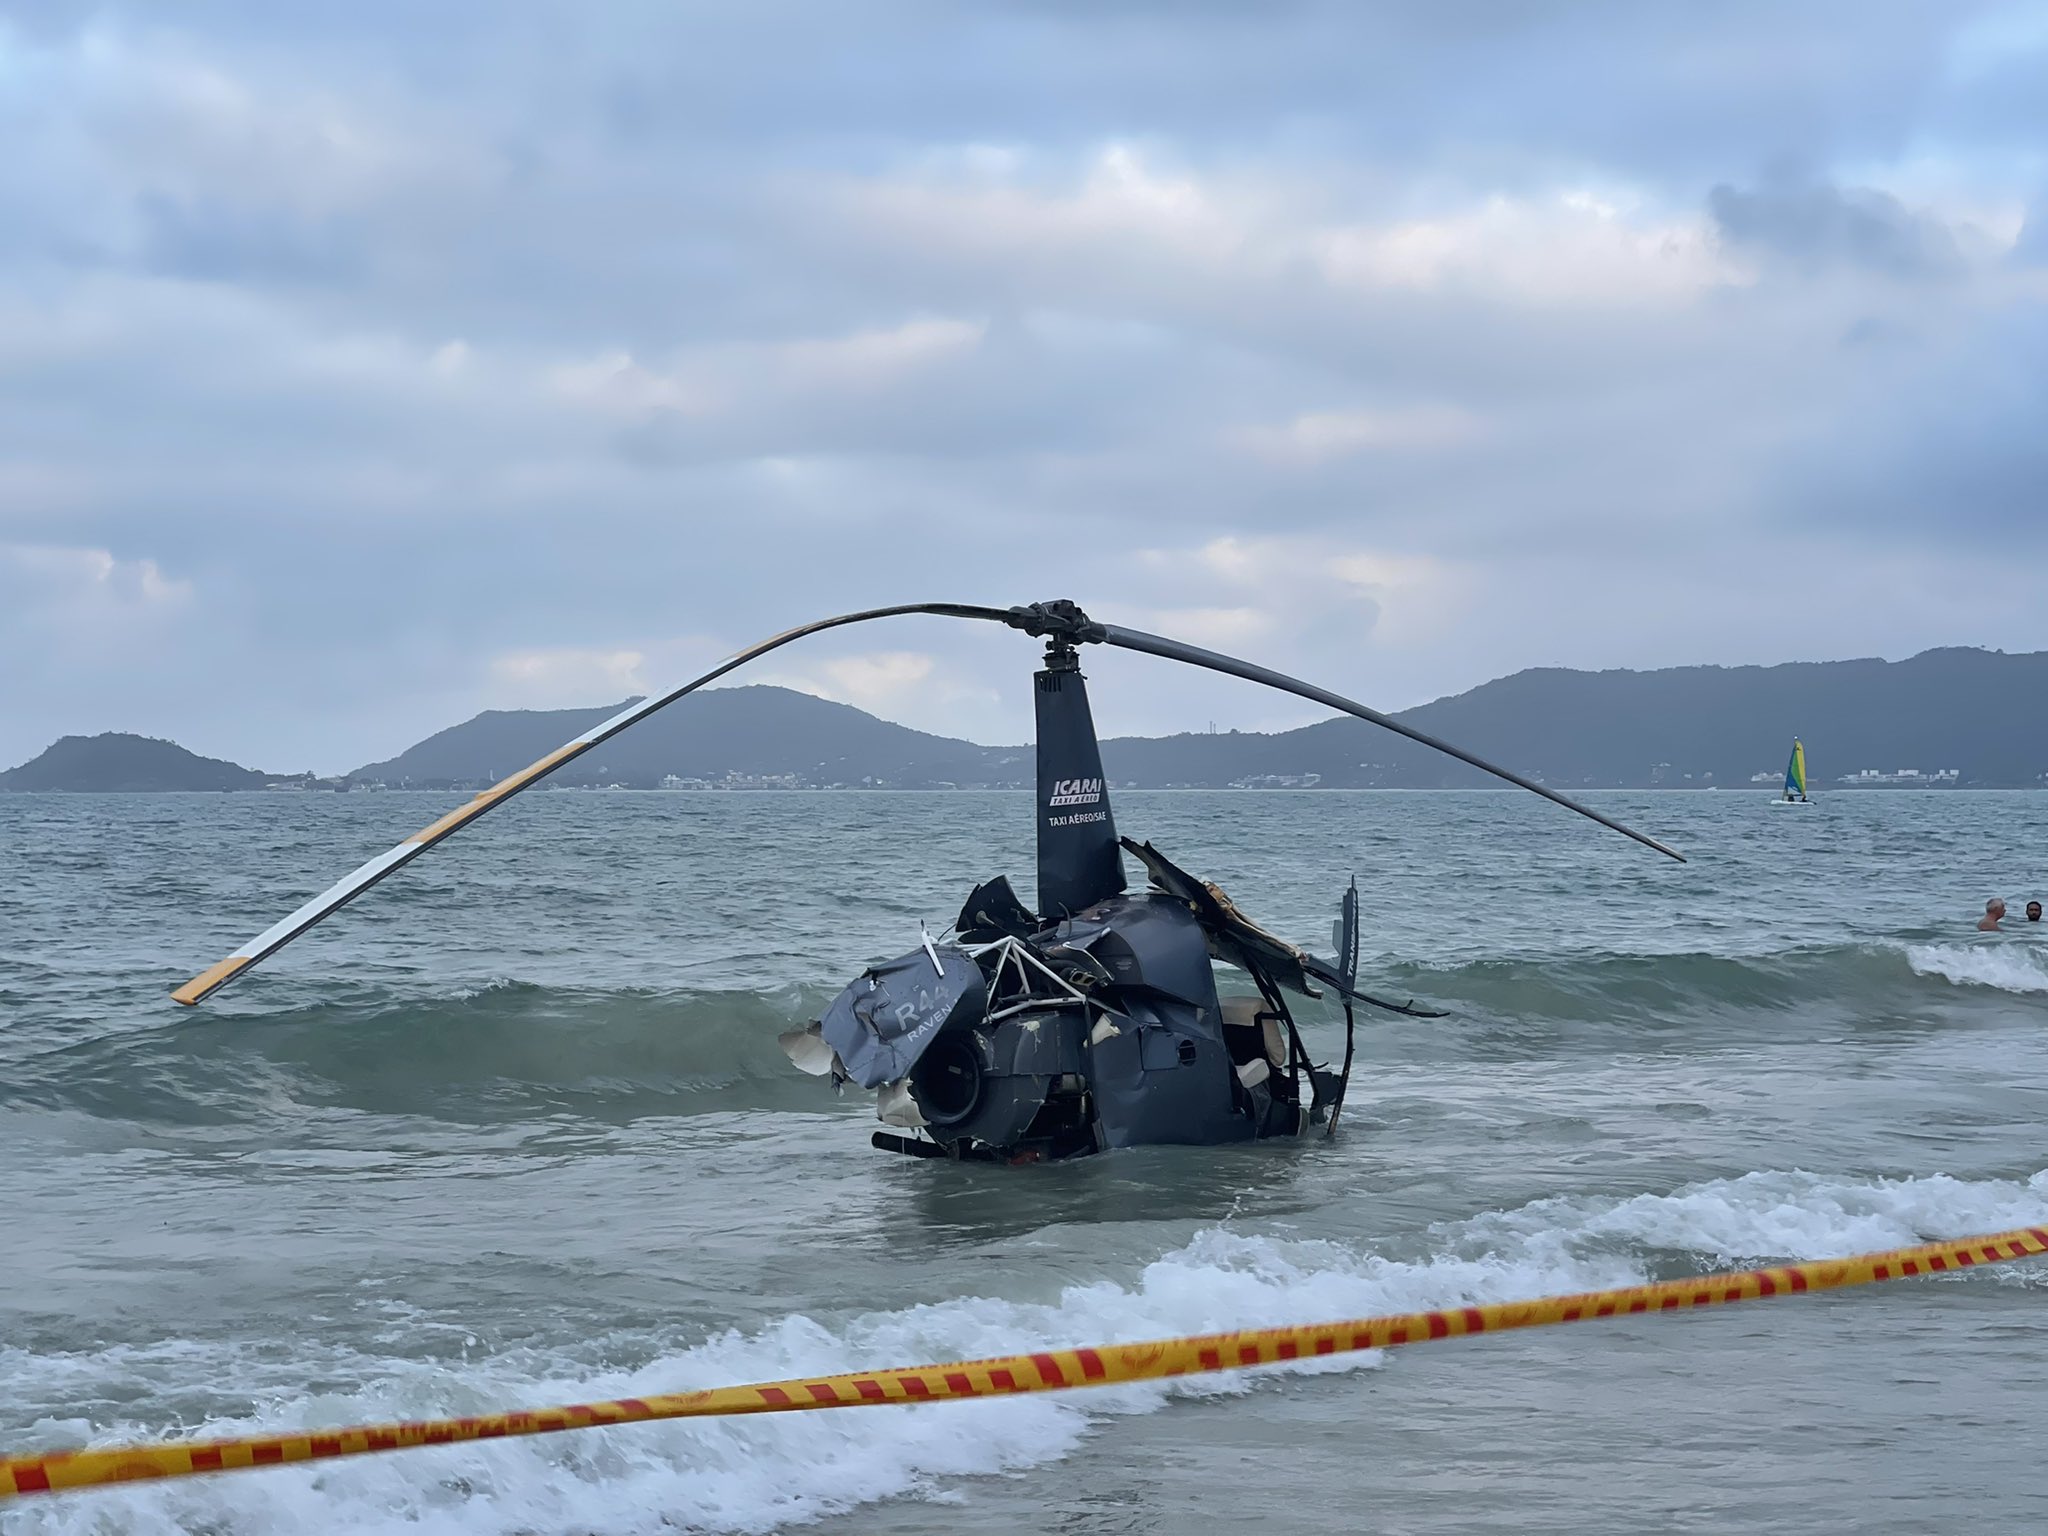 Tres heridos tras estrellarse un helicóptero en una playa de Florianópolis